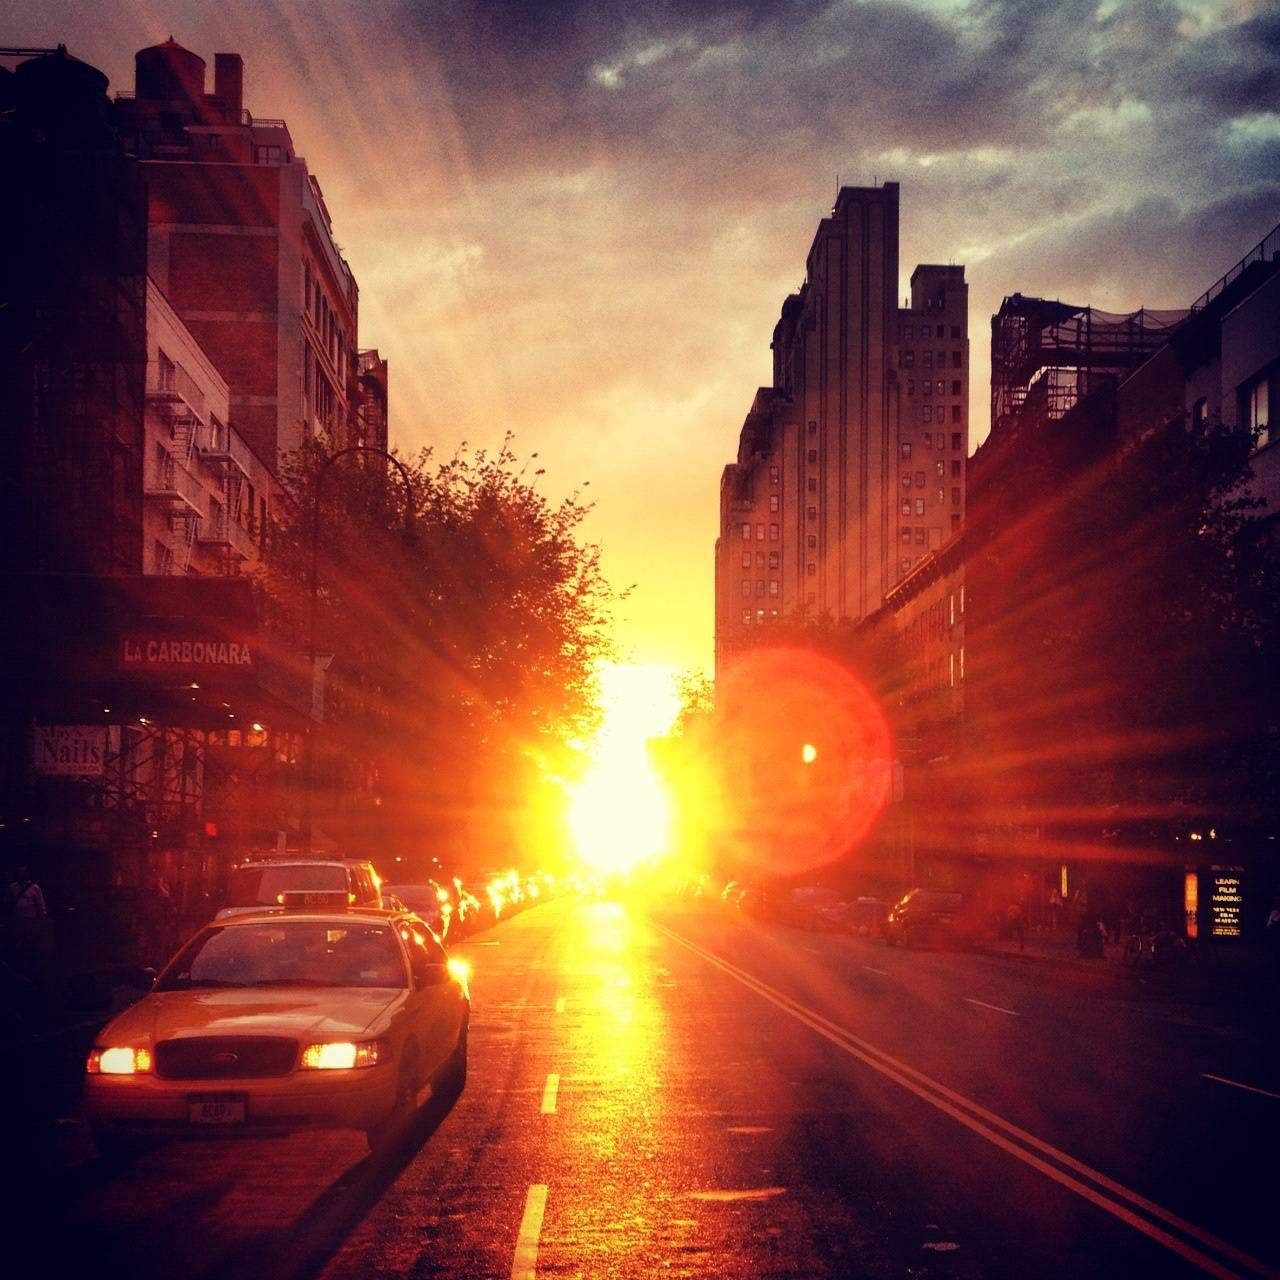 Durante estos días, el sol se alinea perfectamente con la cuadrícula que forman las calles de Manhattan. / Elisa Deljanin